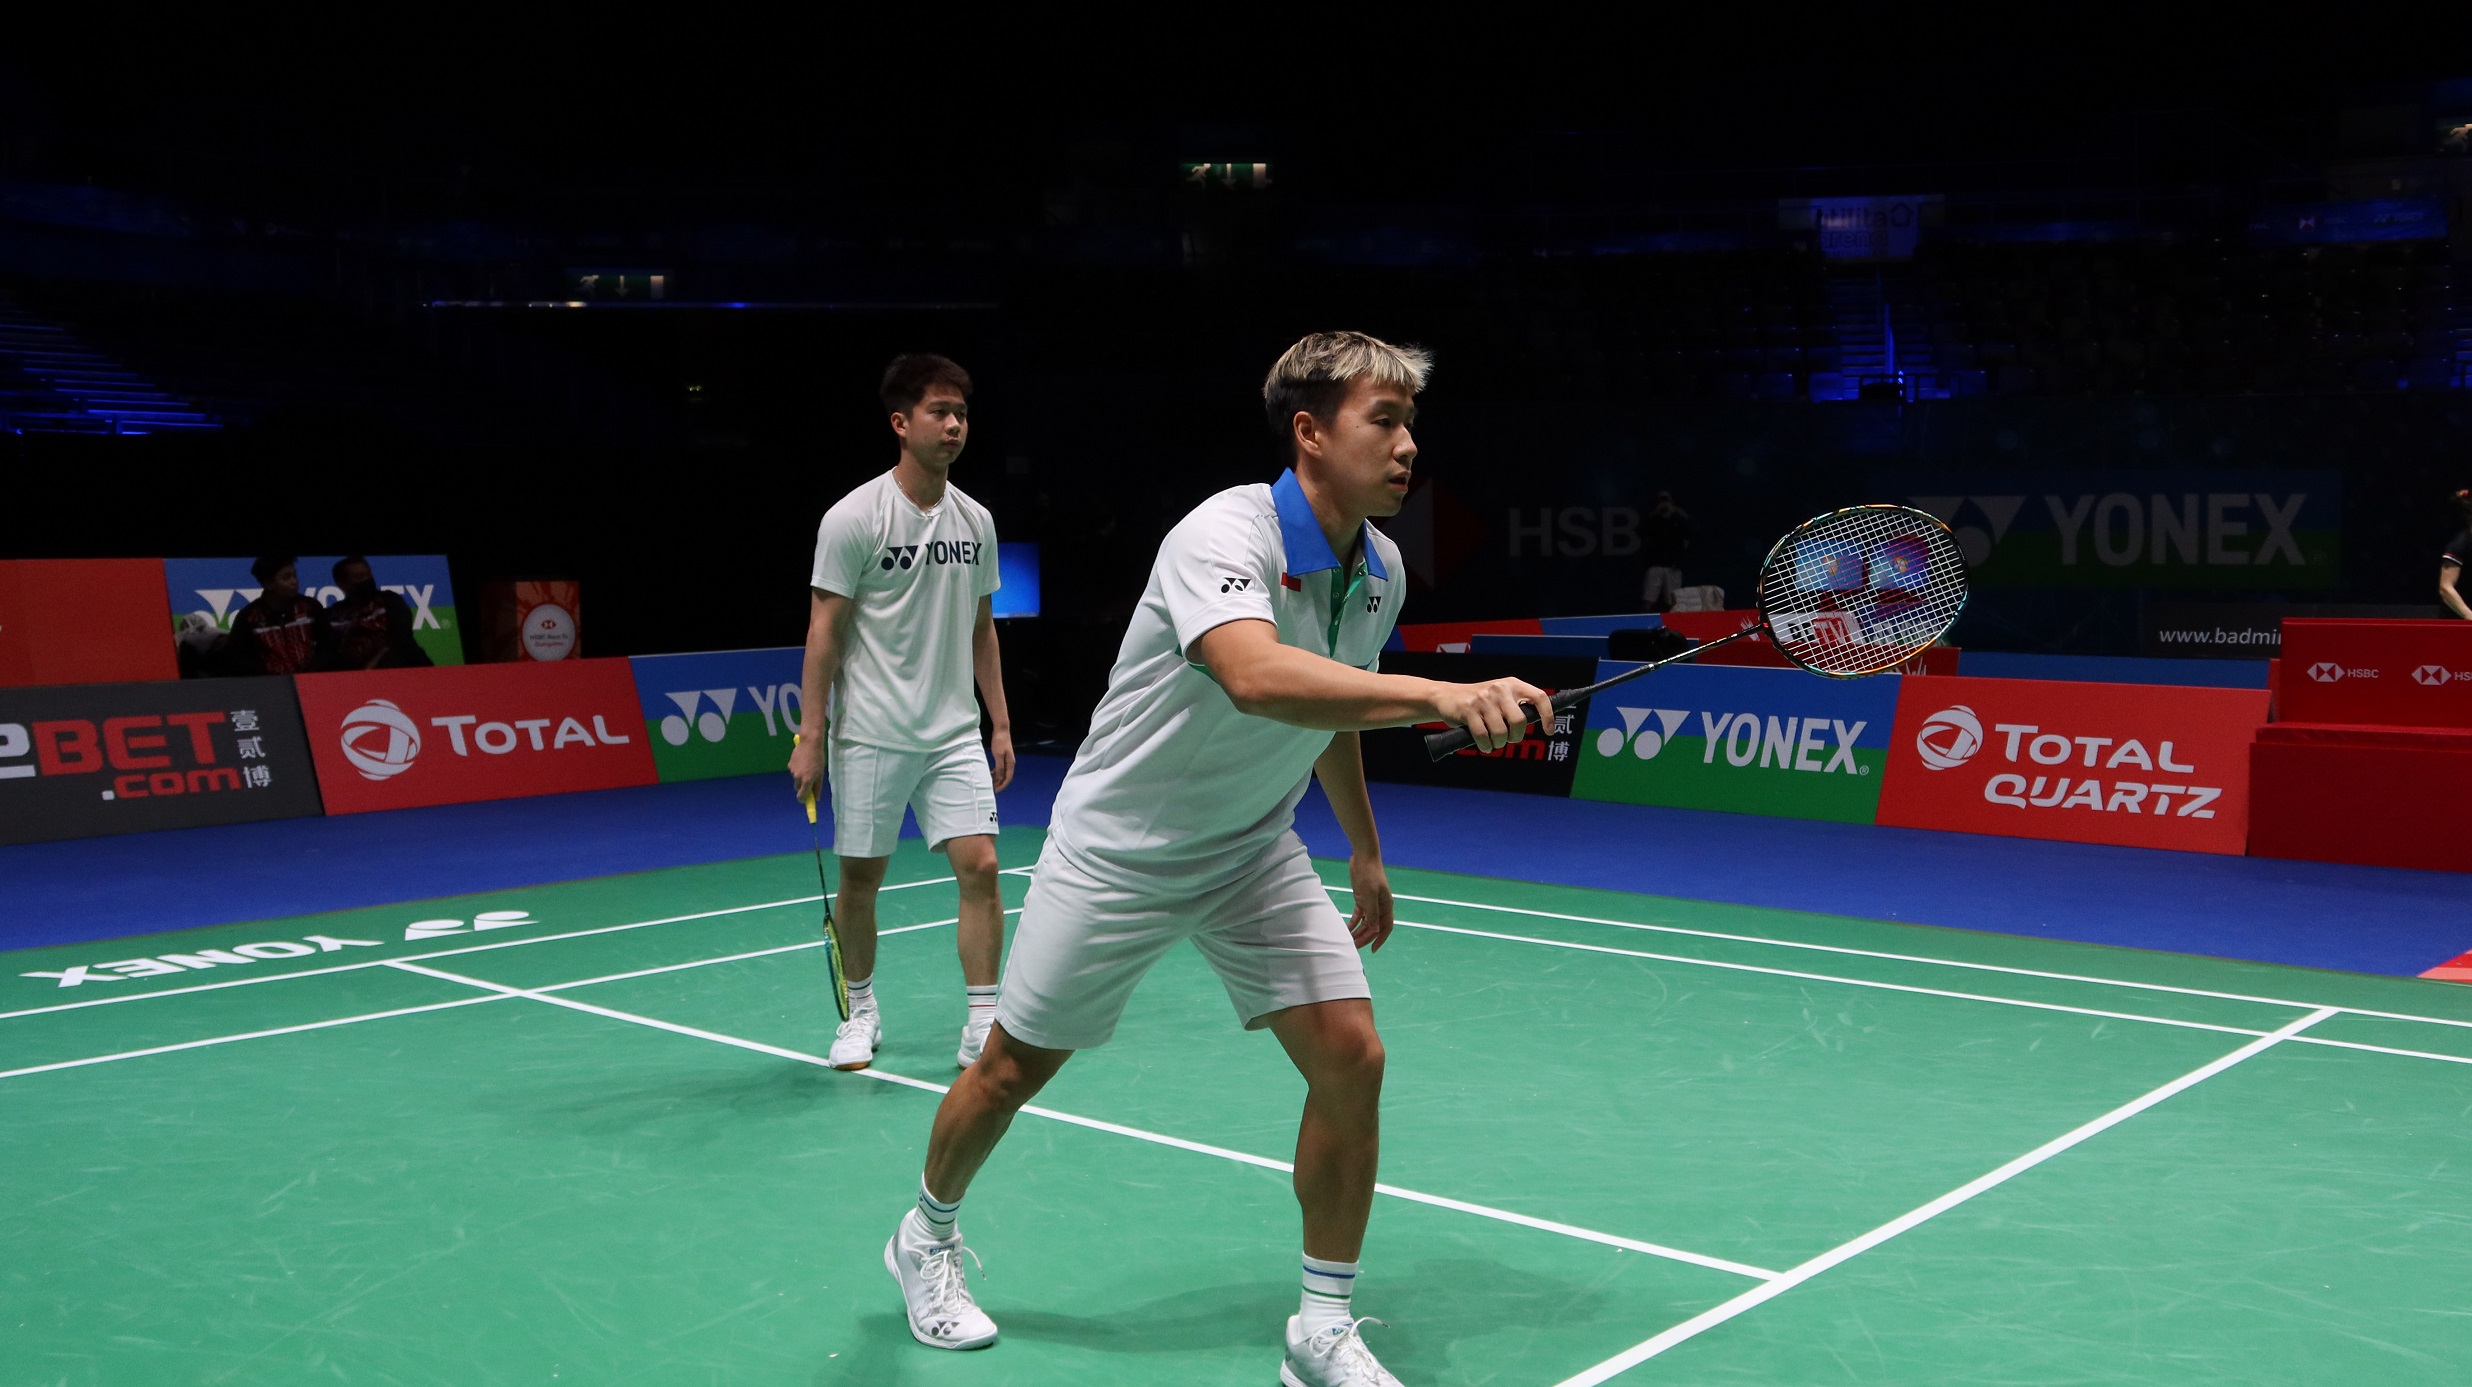 Badminton Cina Siapkan Ganda Putra, Diprediksi Jadi ''Minions'' Baru